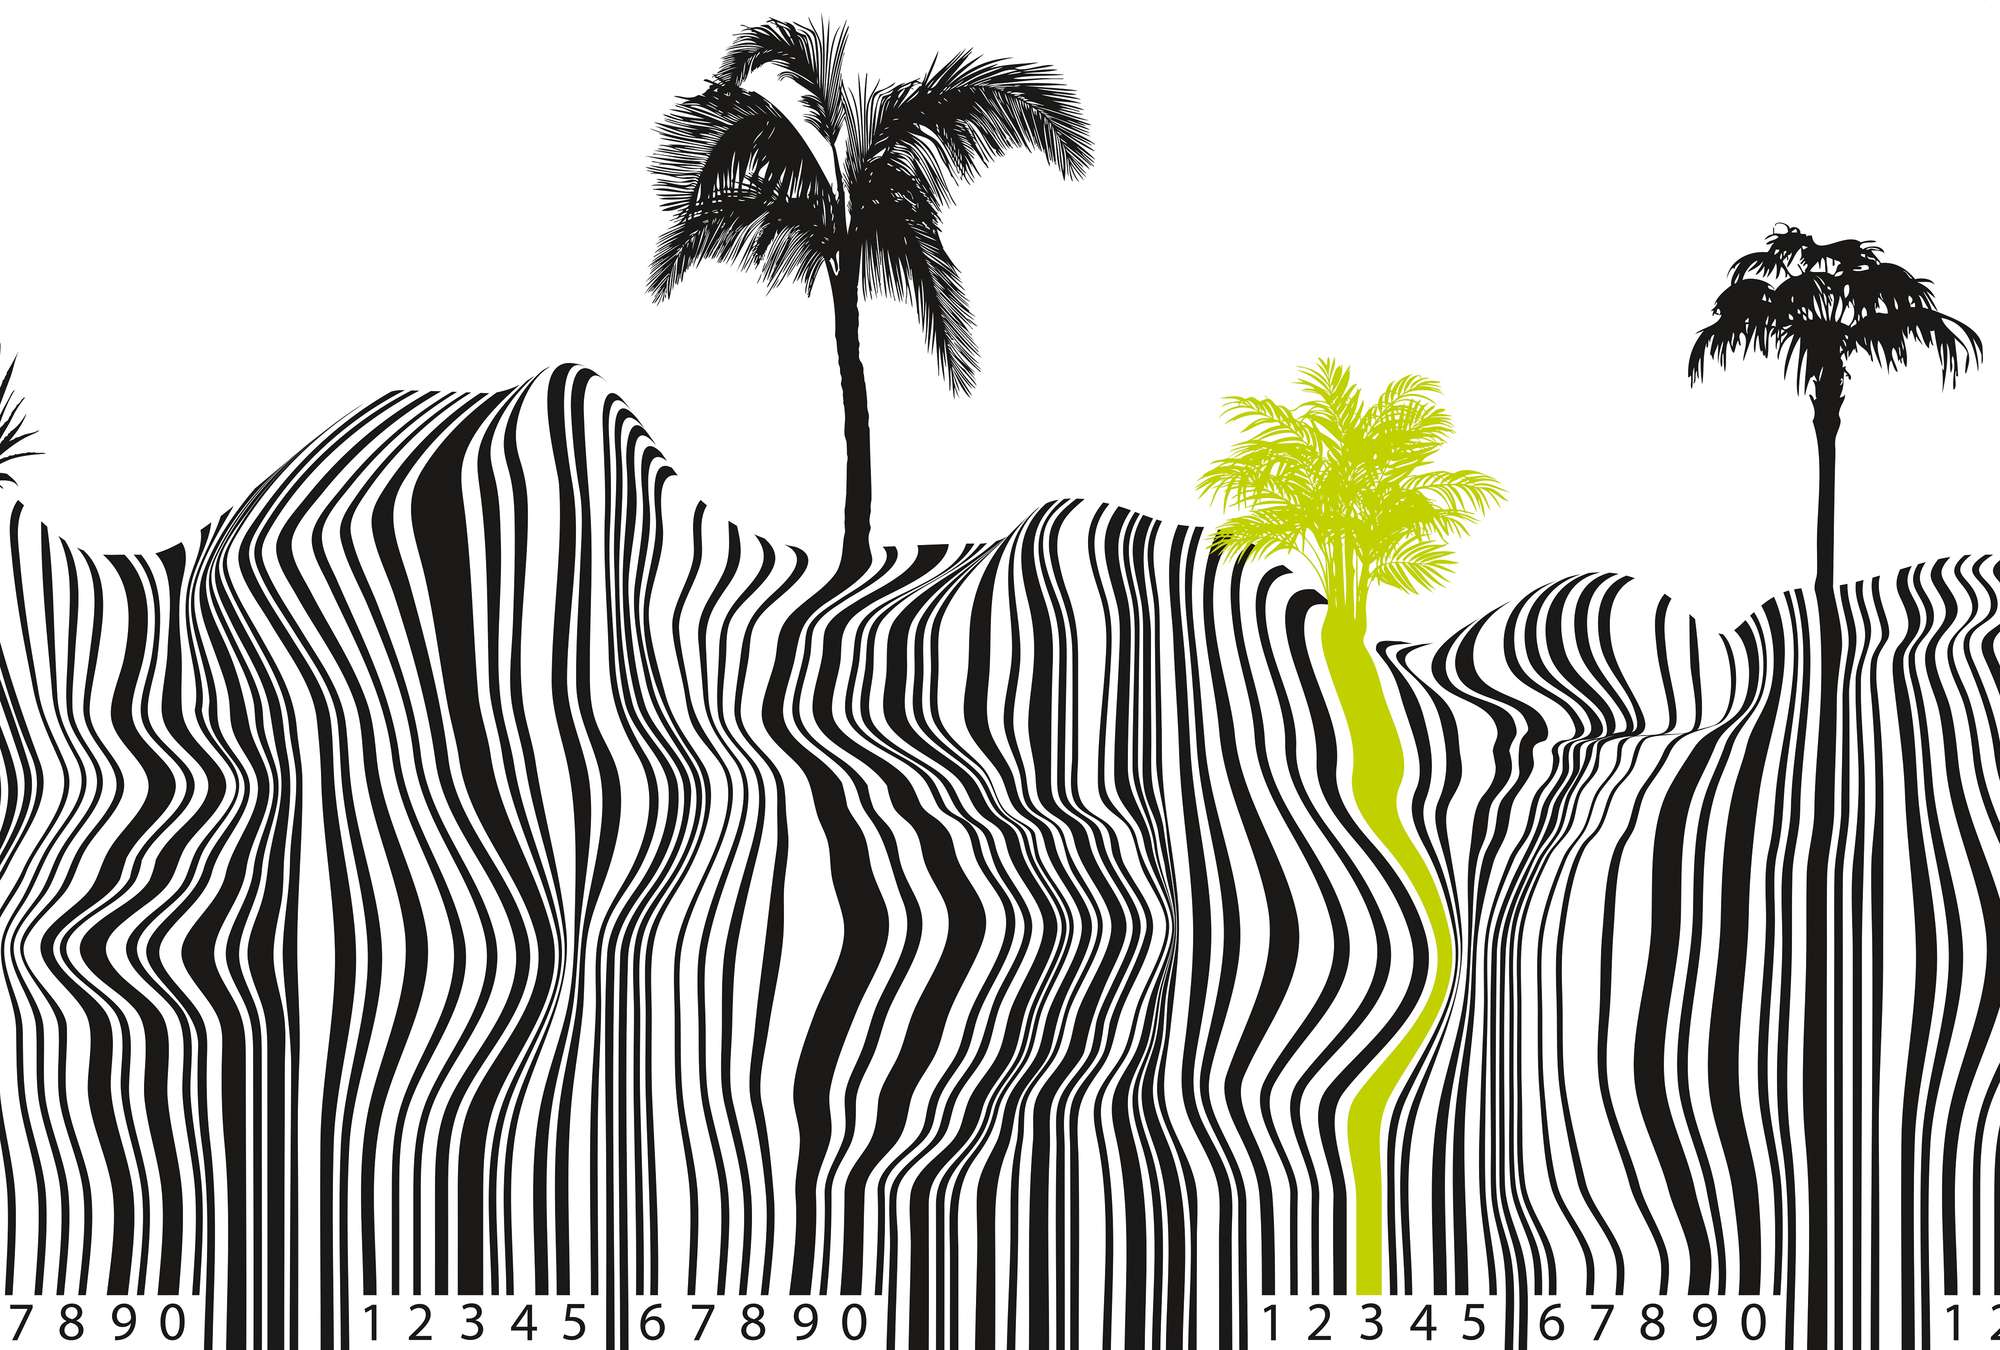             Muurschildering met verfijnd barcodepatroon en palmboomlook
        